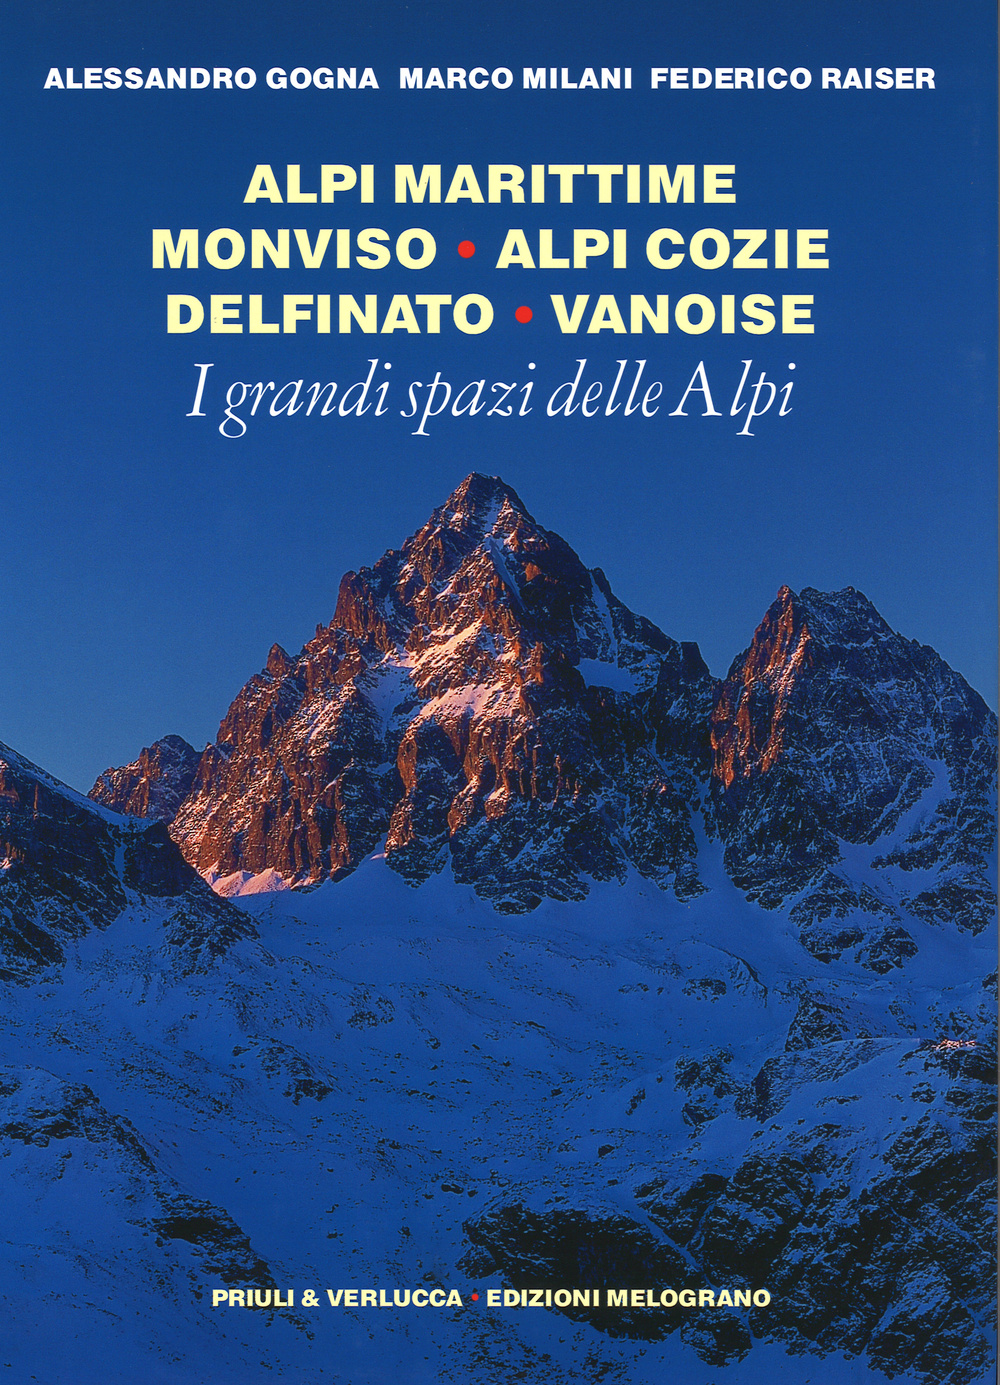 I grandi spazi delle Alpi. Ediz. illustrata. Vol. 1: Alpi Marittime, Monviso, Alpi Cozie, Delfinato, Vanoise